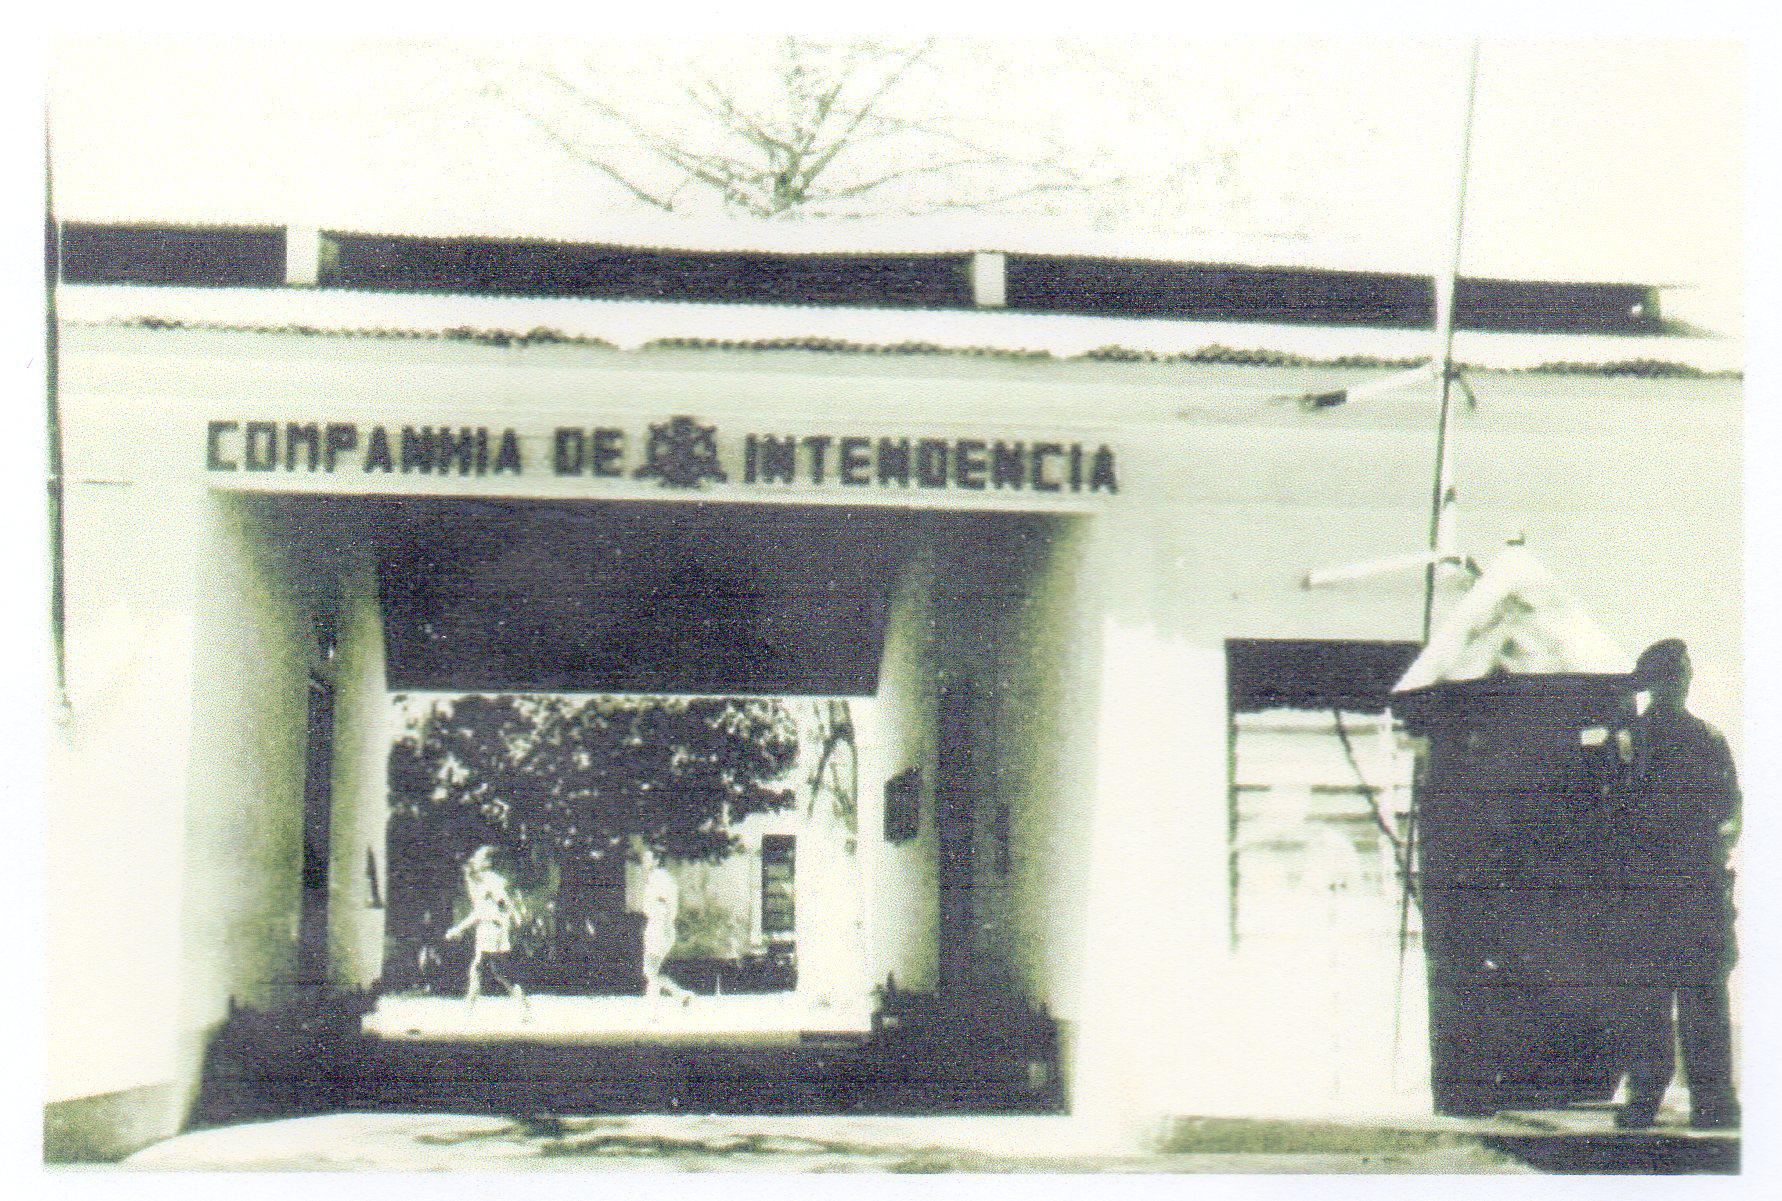 Quartel de Intendencia Entrada pela avenida Sá de Bandeira. 1964